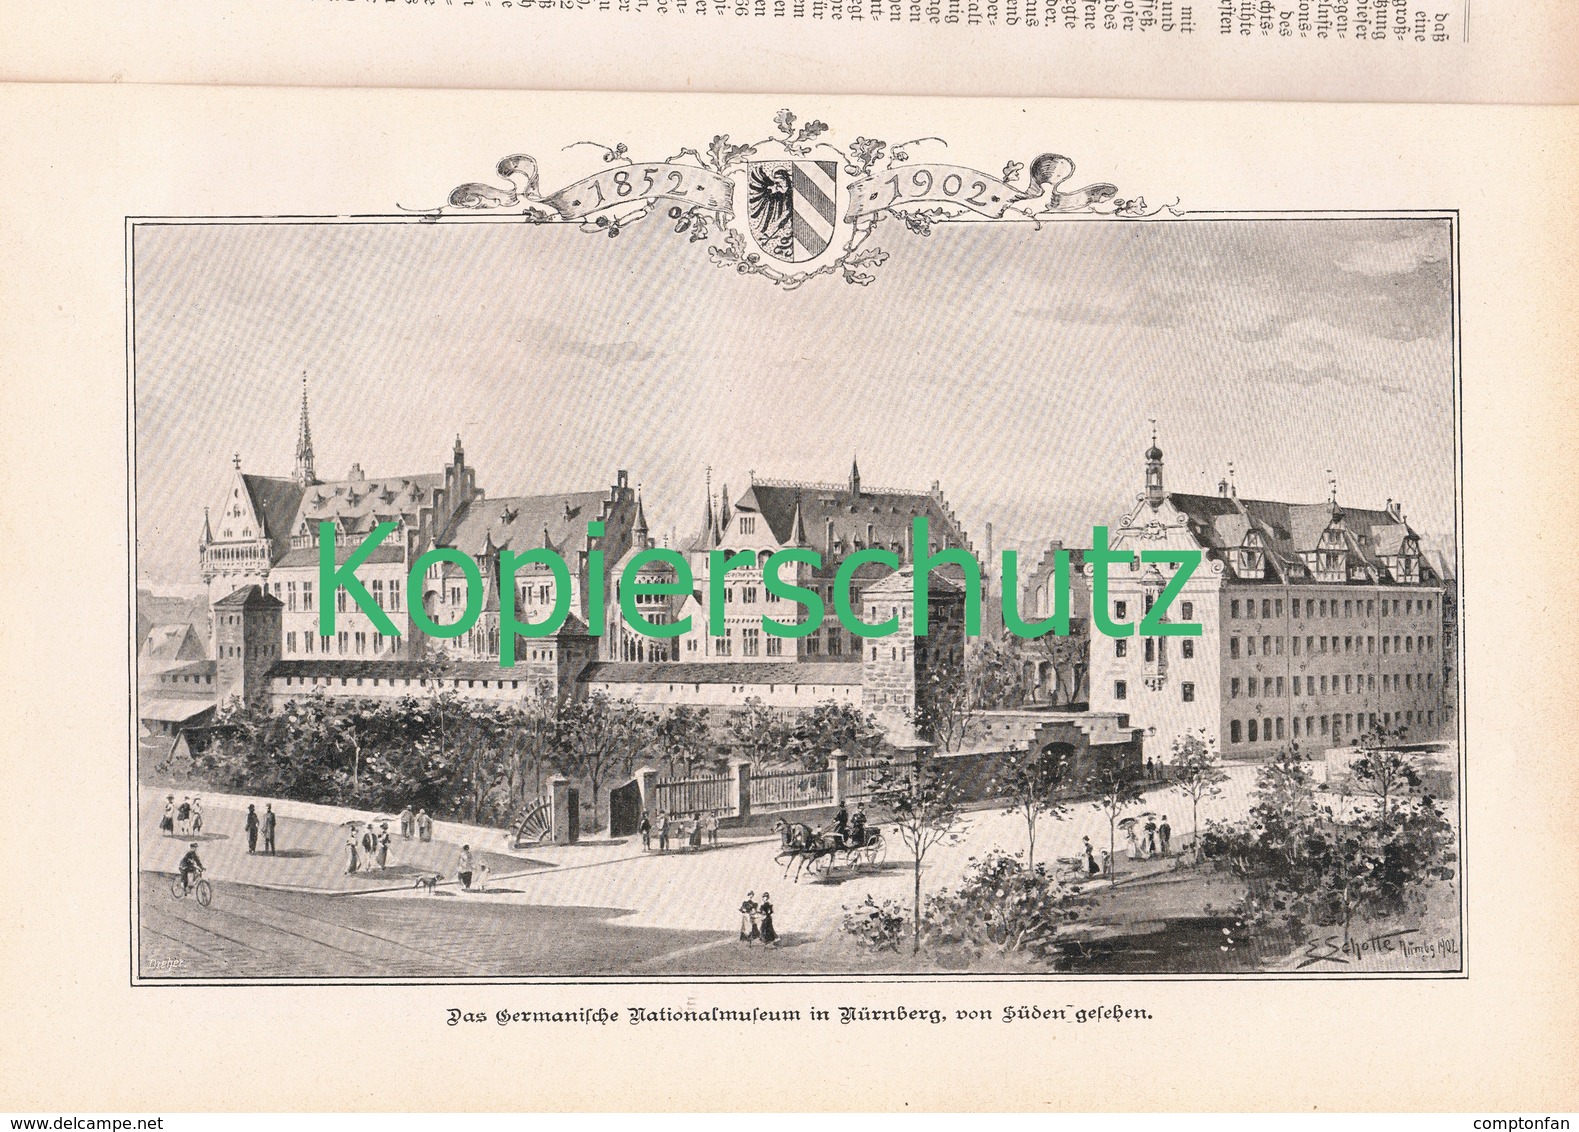 a102 127 Germanische Nationalmuseum Nürnberg  1 Artikel mit ca. 9 Bildern von 1902 !!